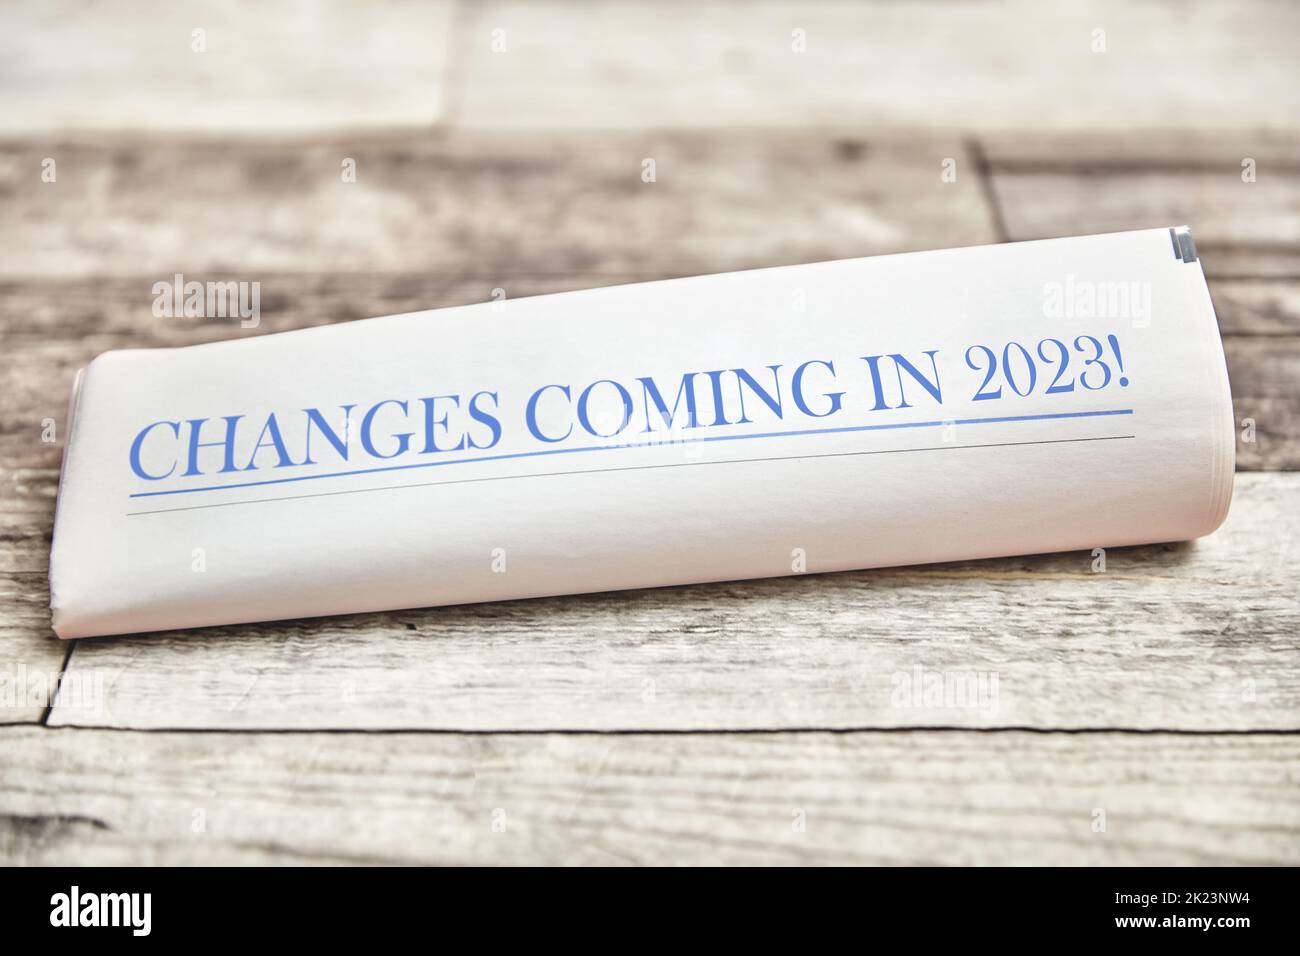 Les changements à venir en 2023 sont écrits sur la première page d'un journal plié sur une table en bois Banque D'Images